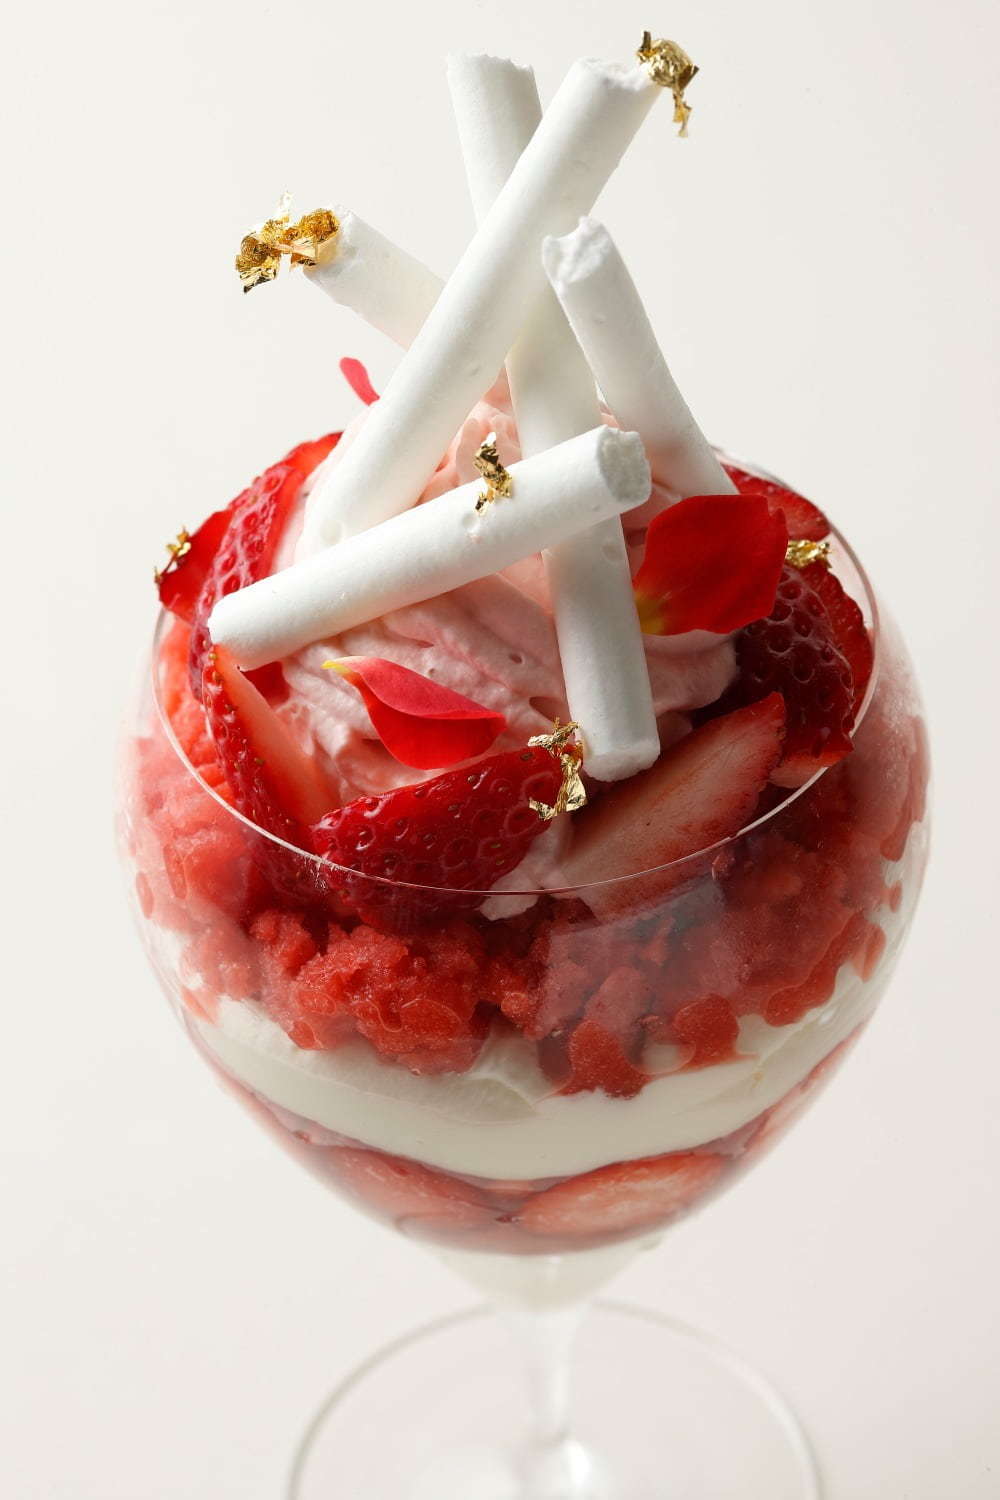 エンポリオ アルマーニ カフェ「苺づくしのパフェ」真っ赤な苺にメレンゲを飾ったアートなパフェ | 写真